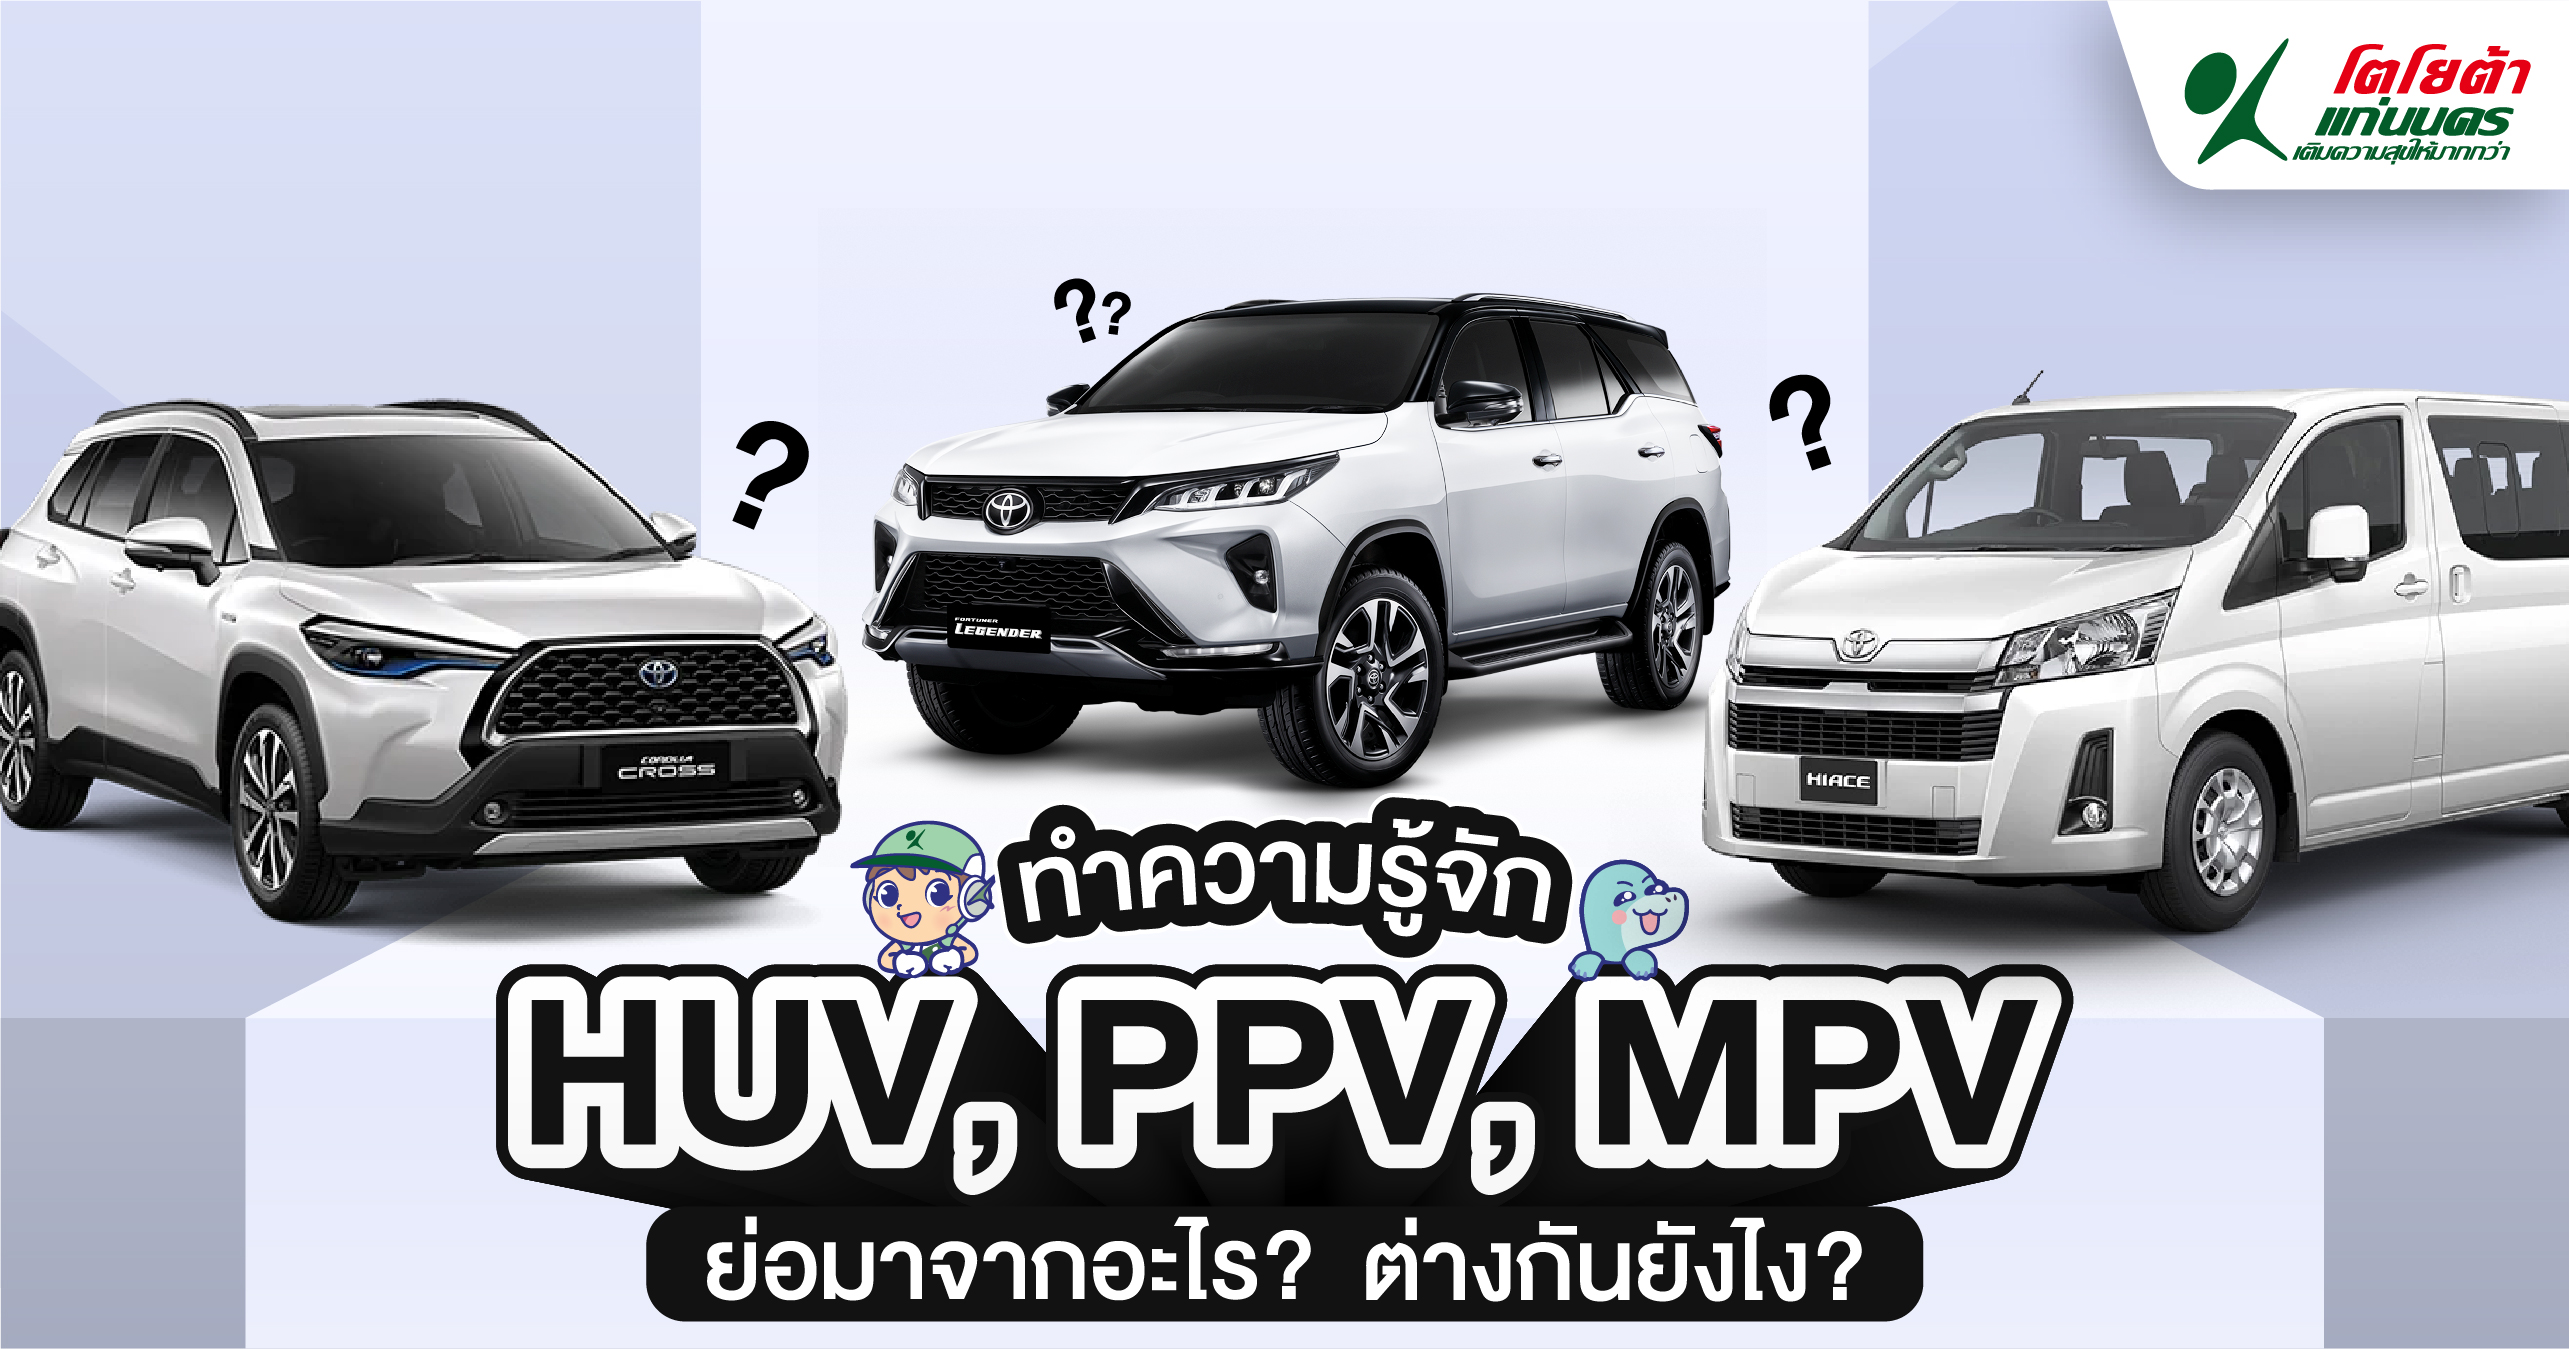 HUV, PPV, MPV ย่อมาจากอะไร ต่างกันยังไง ?